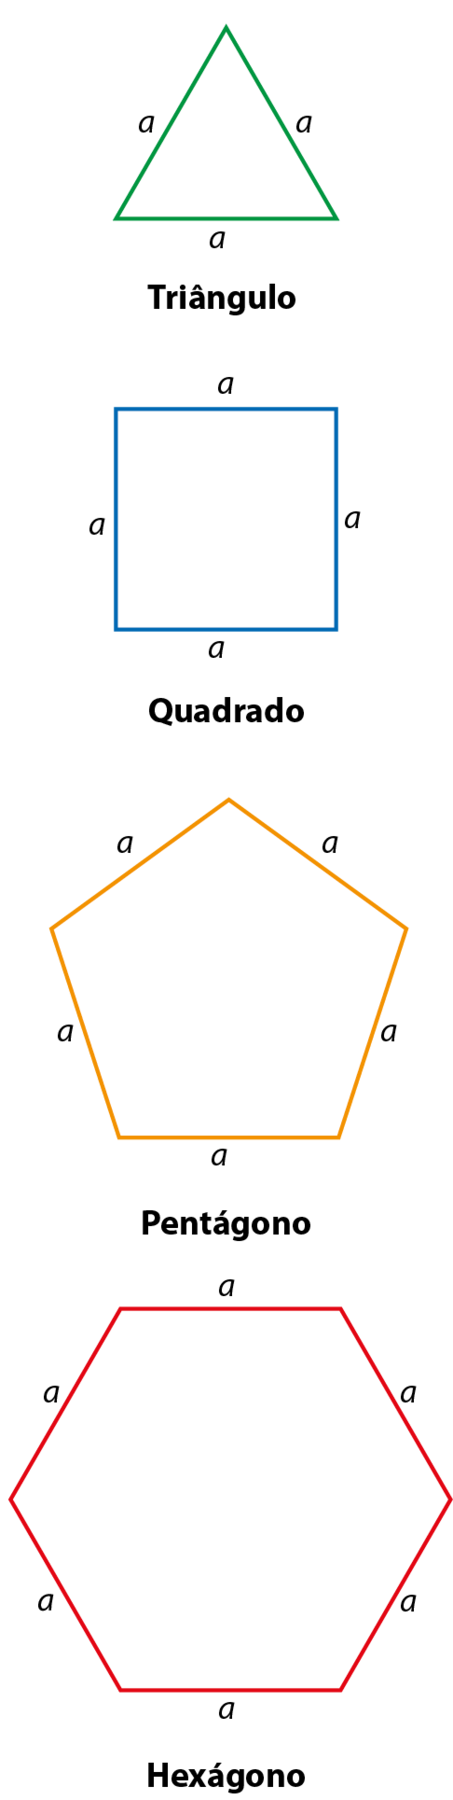 Ilustração. Triângulo de lados iguais com medida a em cada lado. Ilustração. Quadrado de lados iguais com medida a em cada lado. Ilustração. Pentágono  de lados iguais com medida a em cada lado. Ilustração. Hexágono de lados iguais com medida a em cada lado.